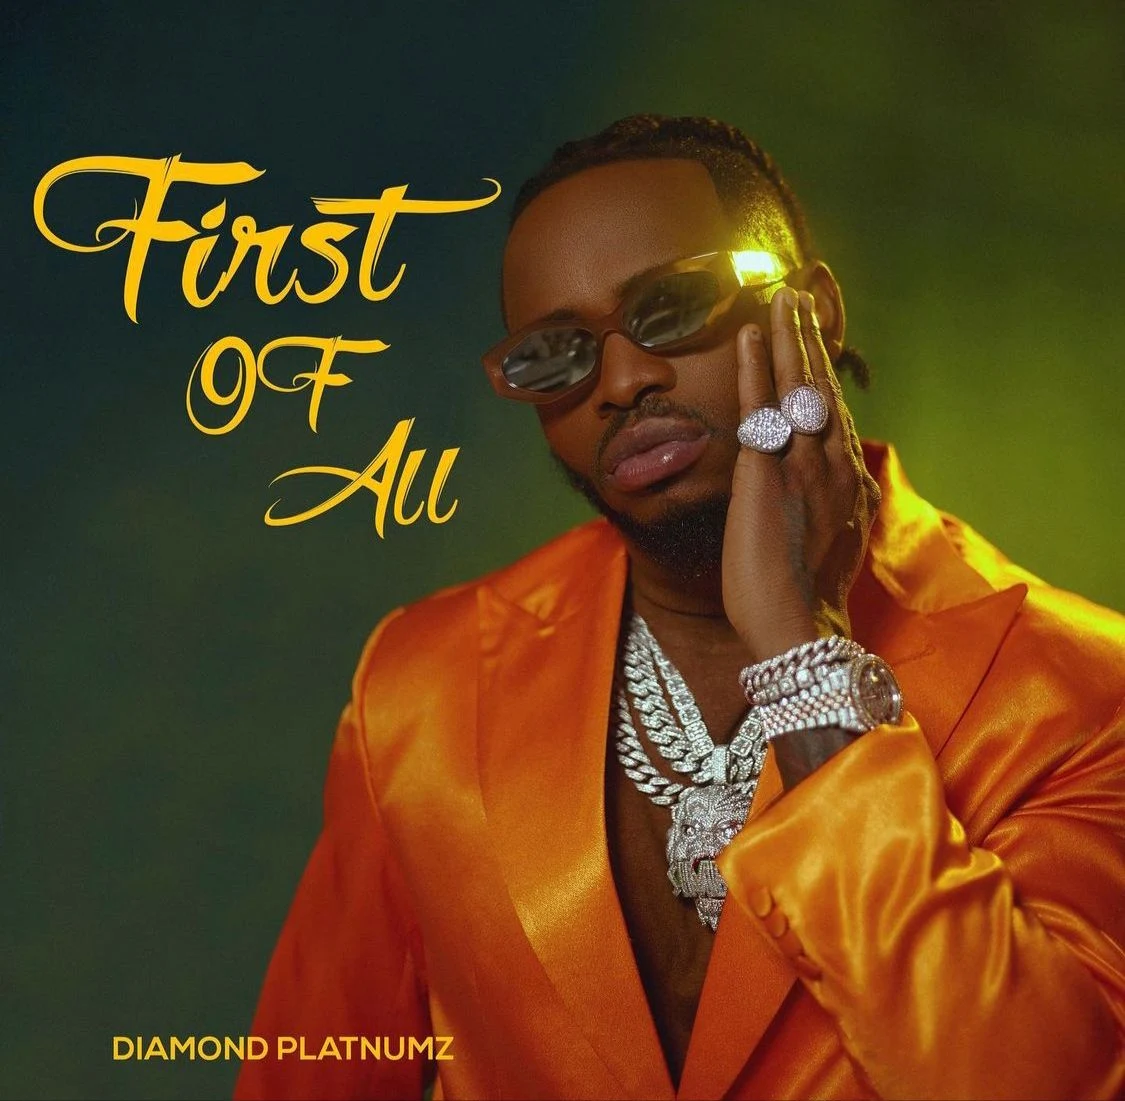 *African Music legend, Diamond Platnumz drops new EP, First of All